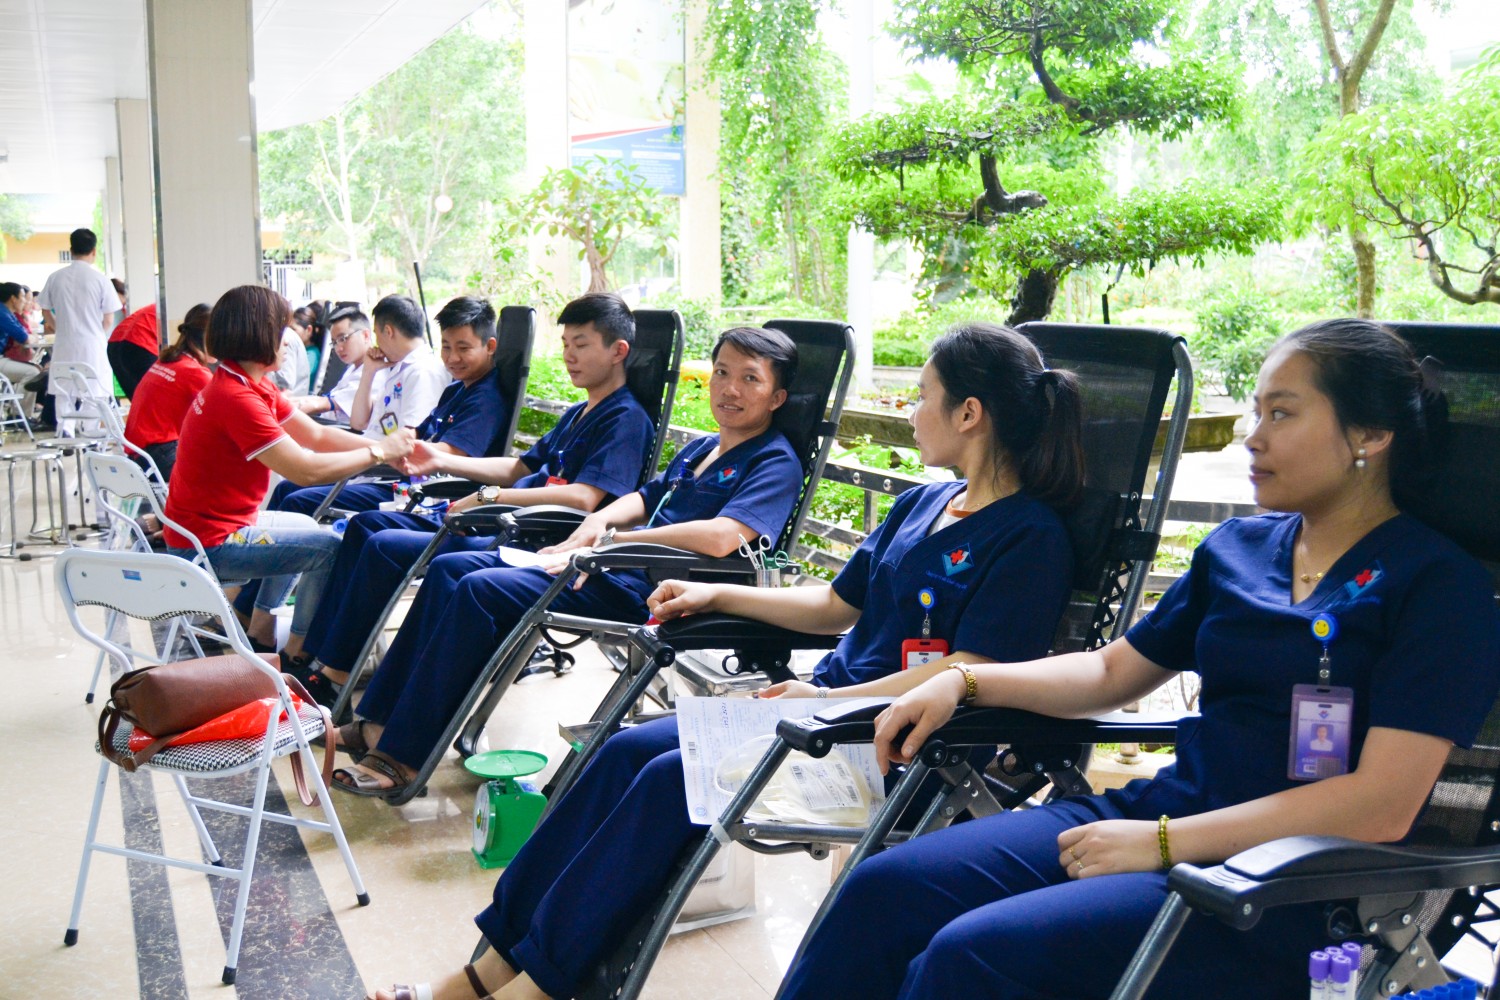 BVĐK Hùng Vương ngày hội hiến máu Tháng 5 - 2019